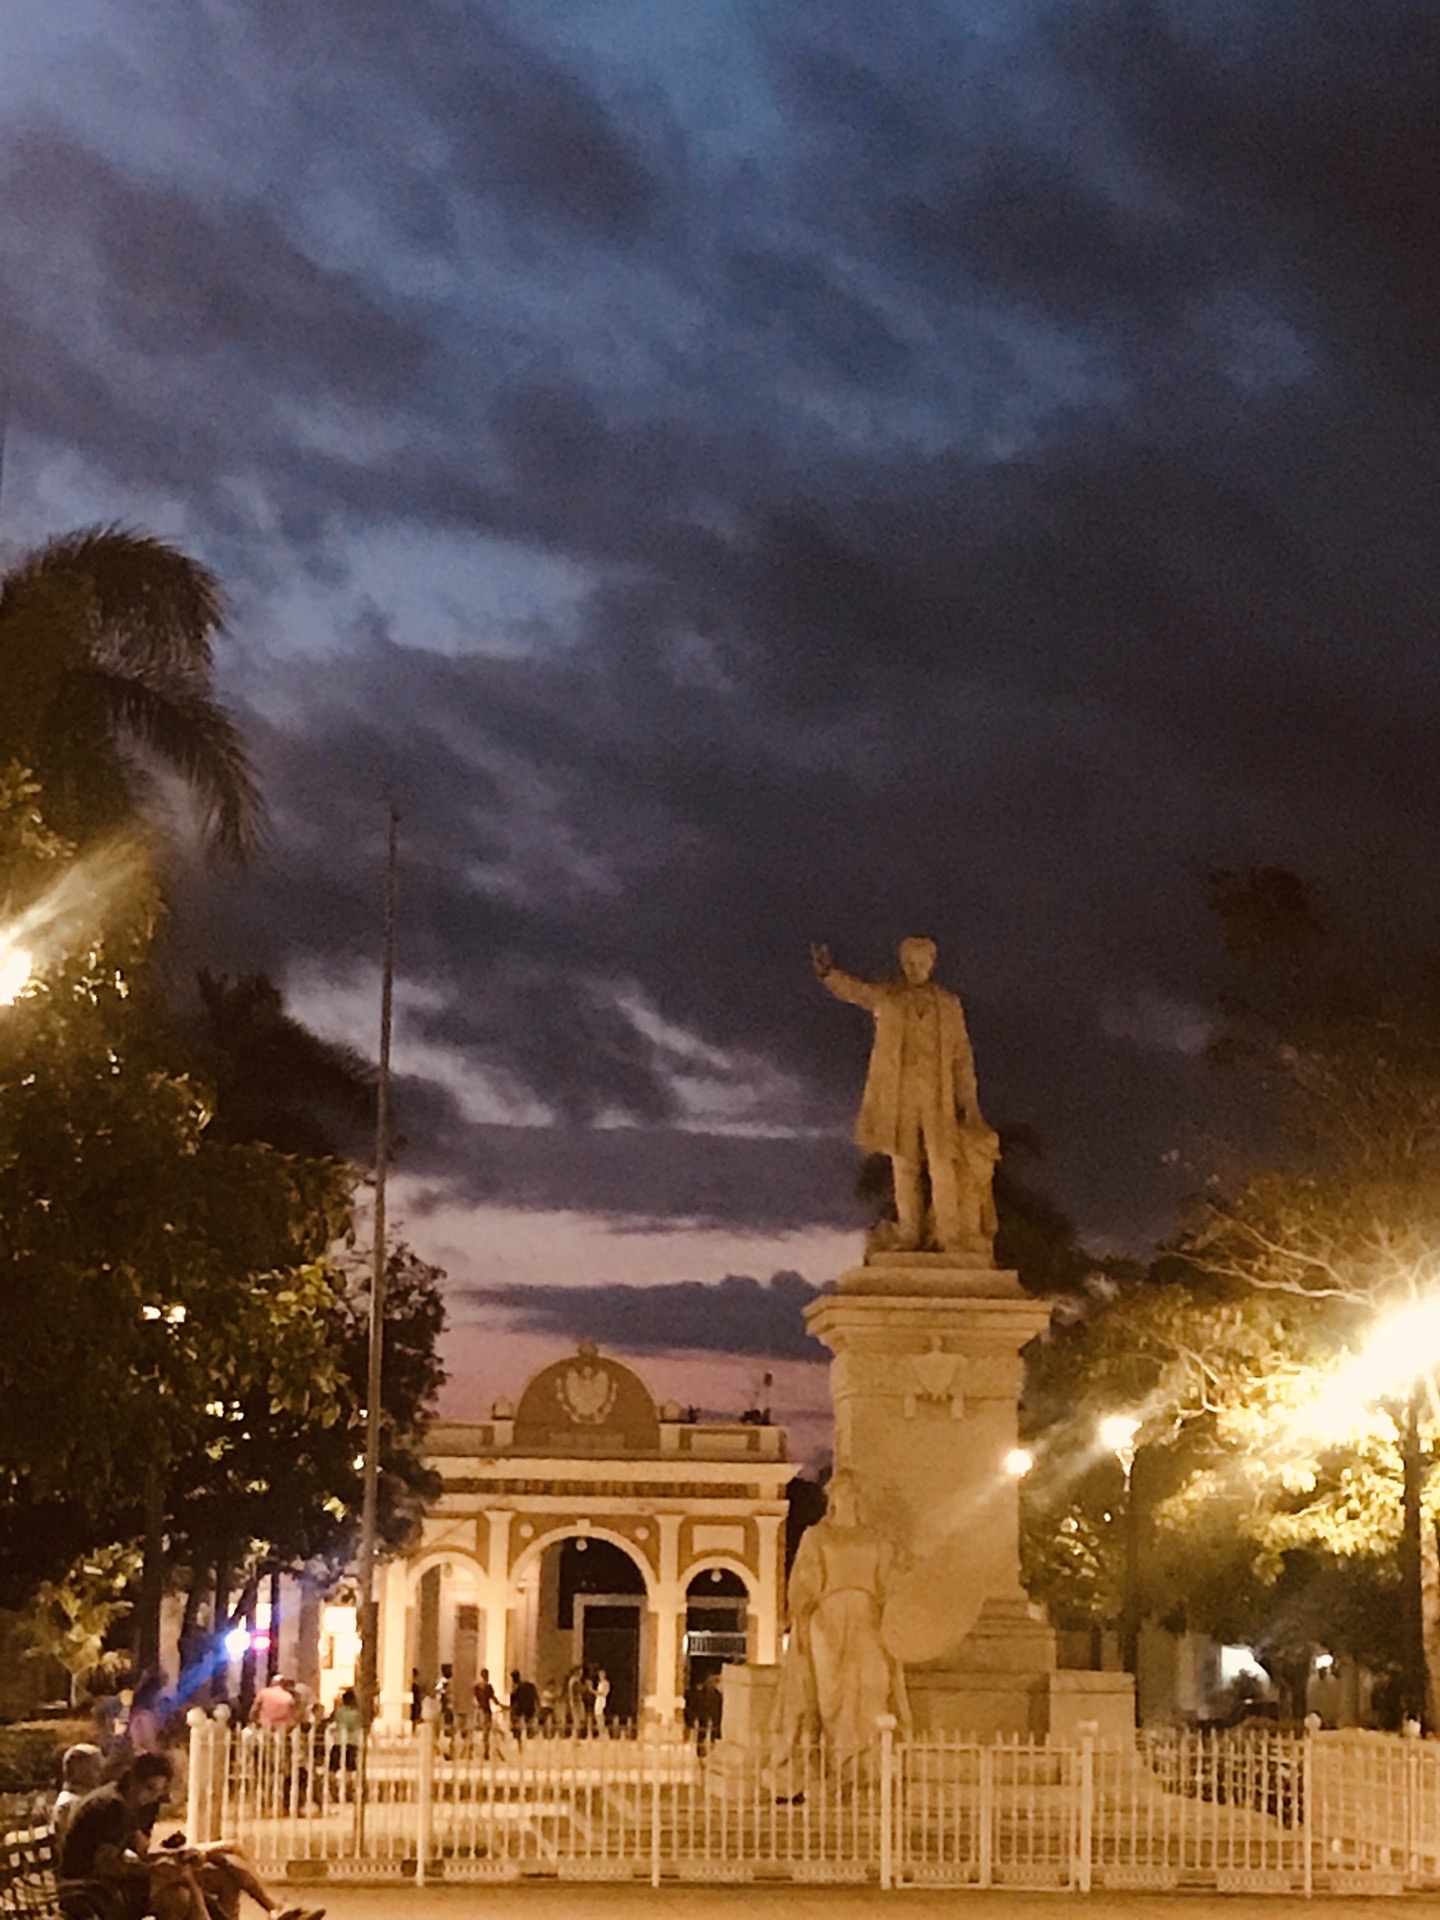 Cienfuegos，中文名西恩富戈斯，是古巴岛南部的一座历史古城，涉临南海岸。历史悠久可以从街道上